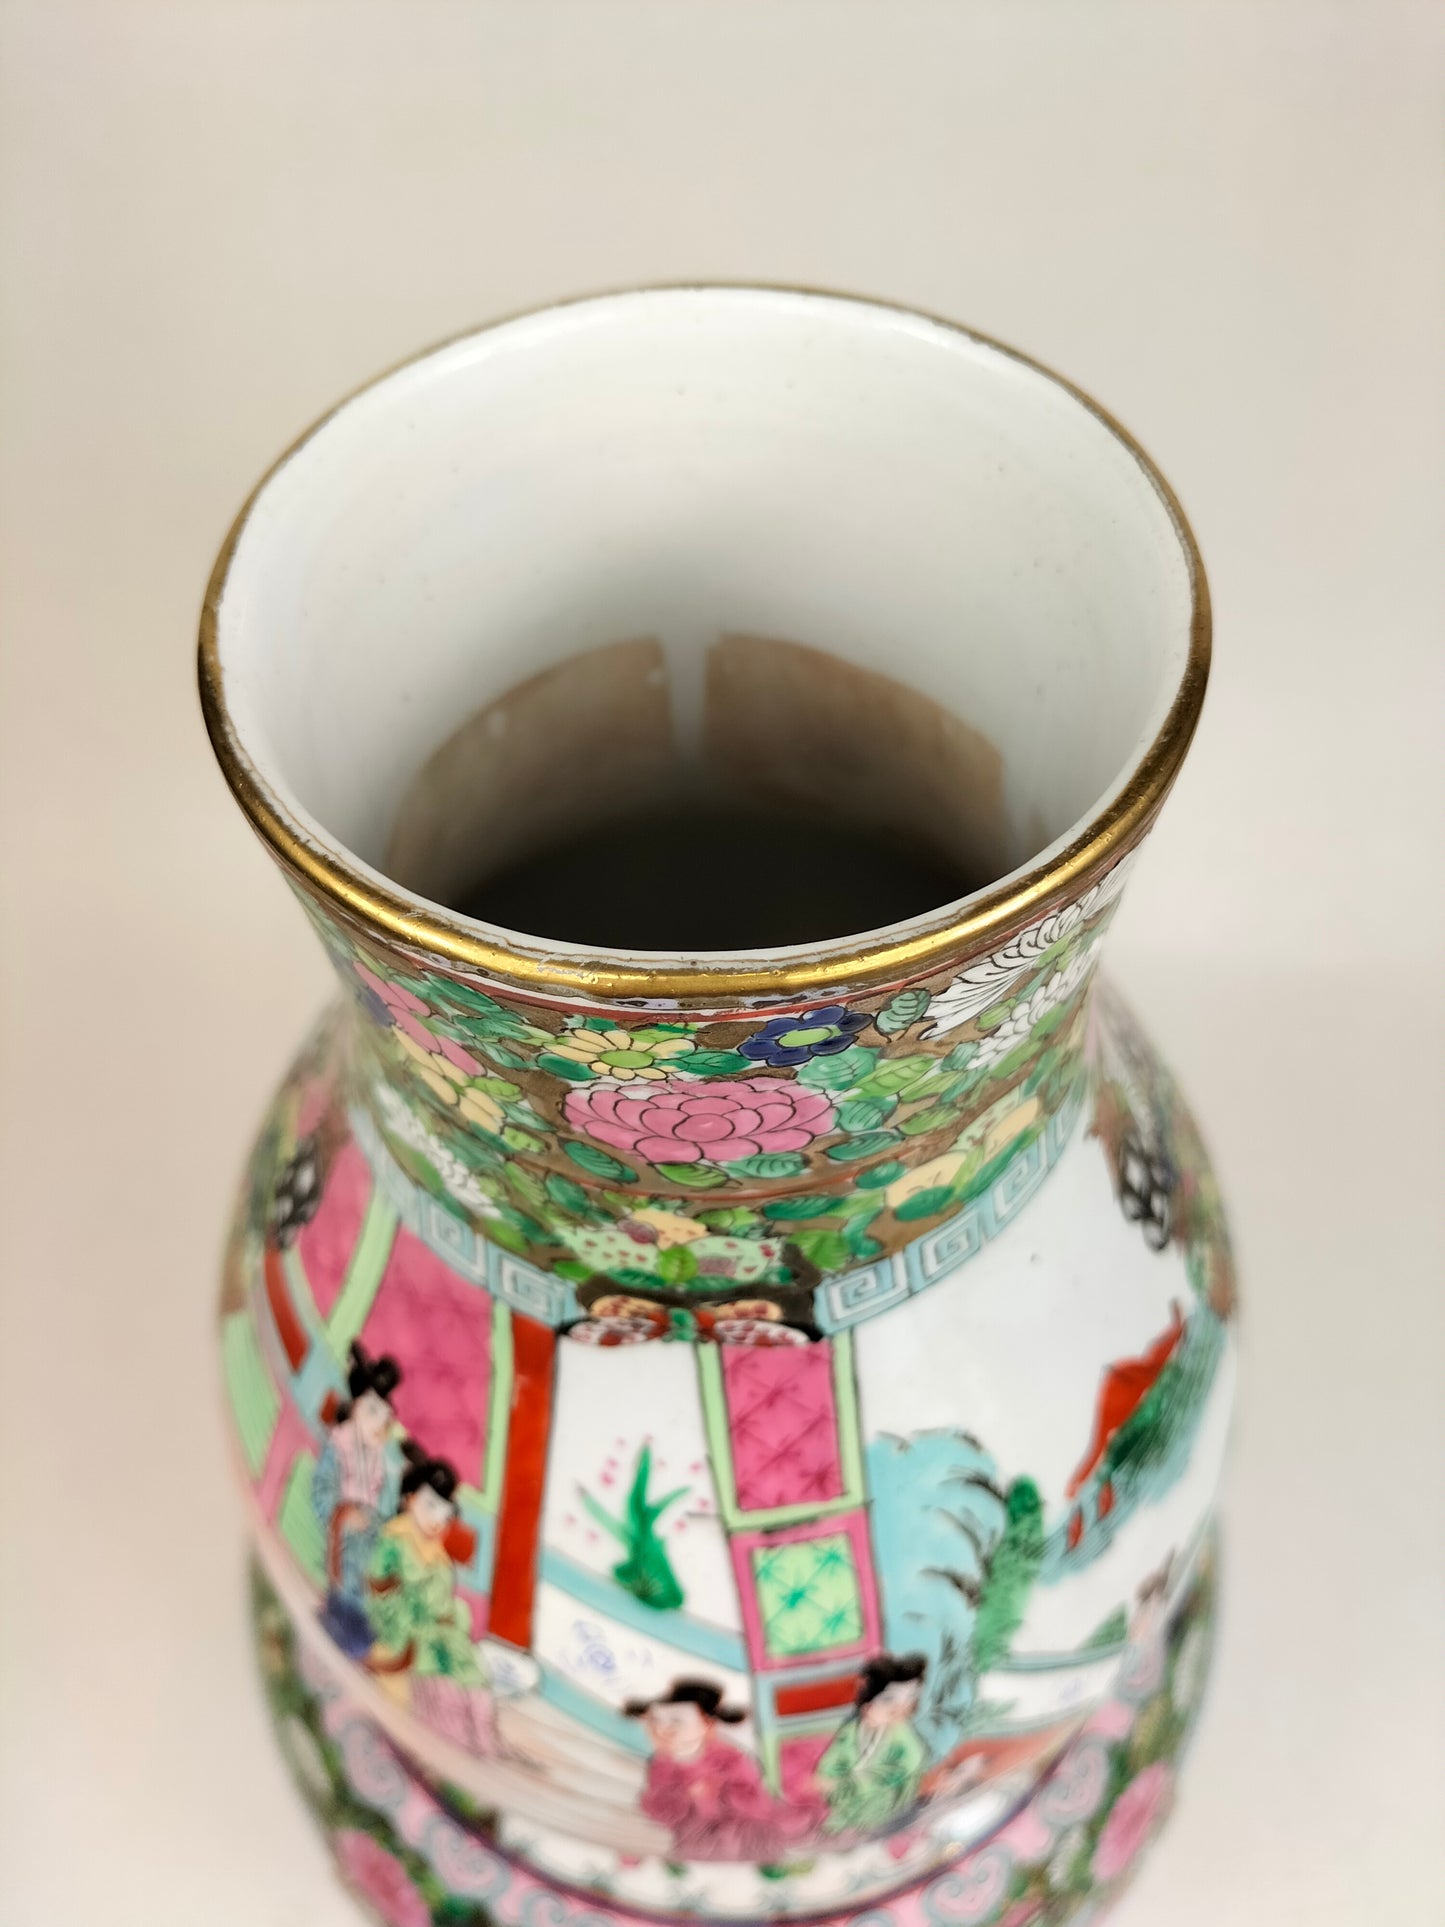 Grand vase double gourde médaillon rose canton chinois XL // 20ème siècle